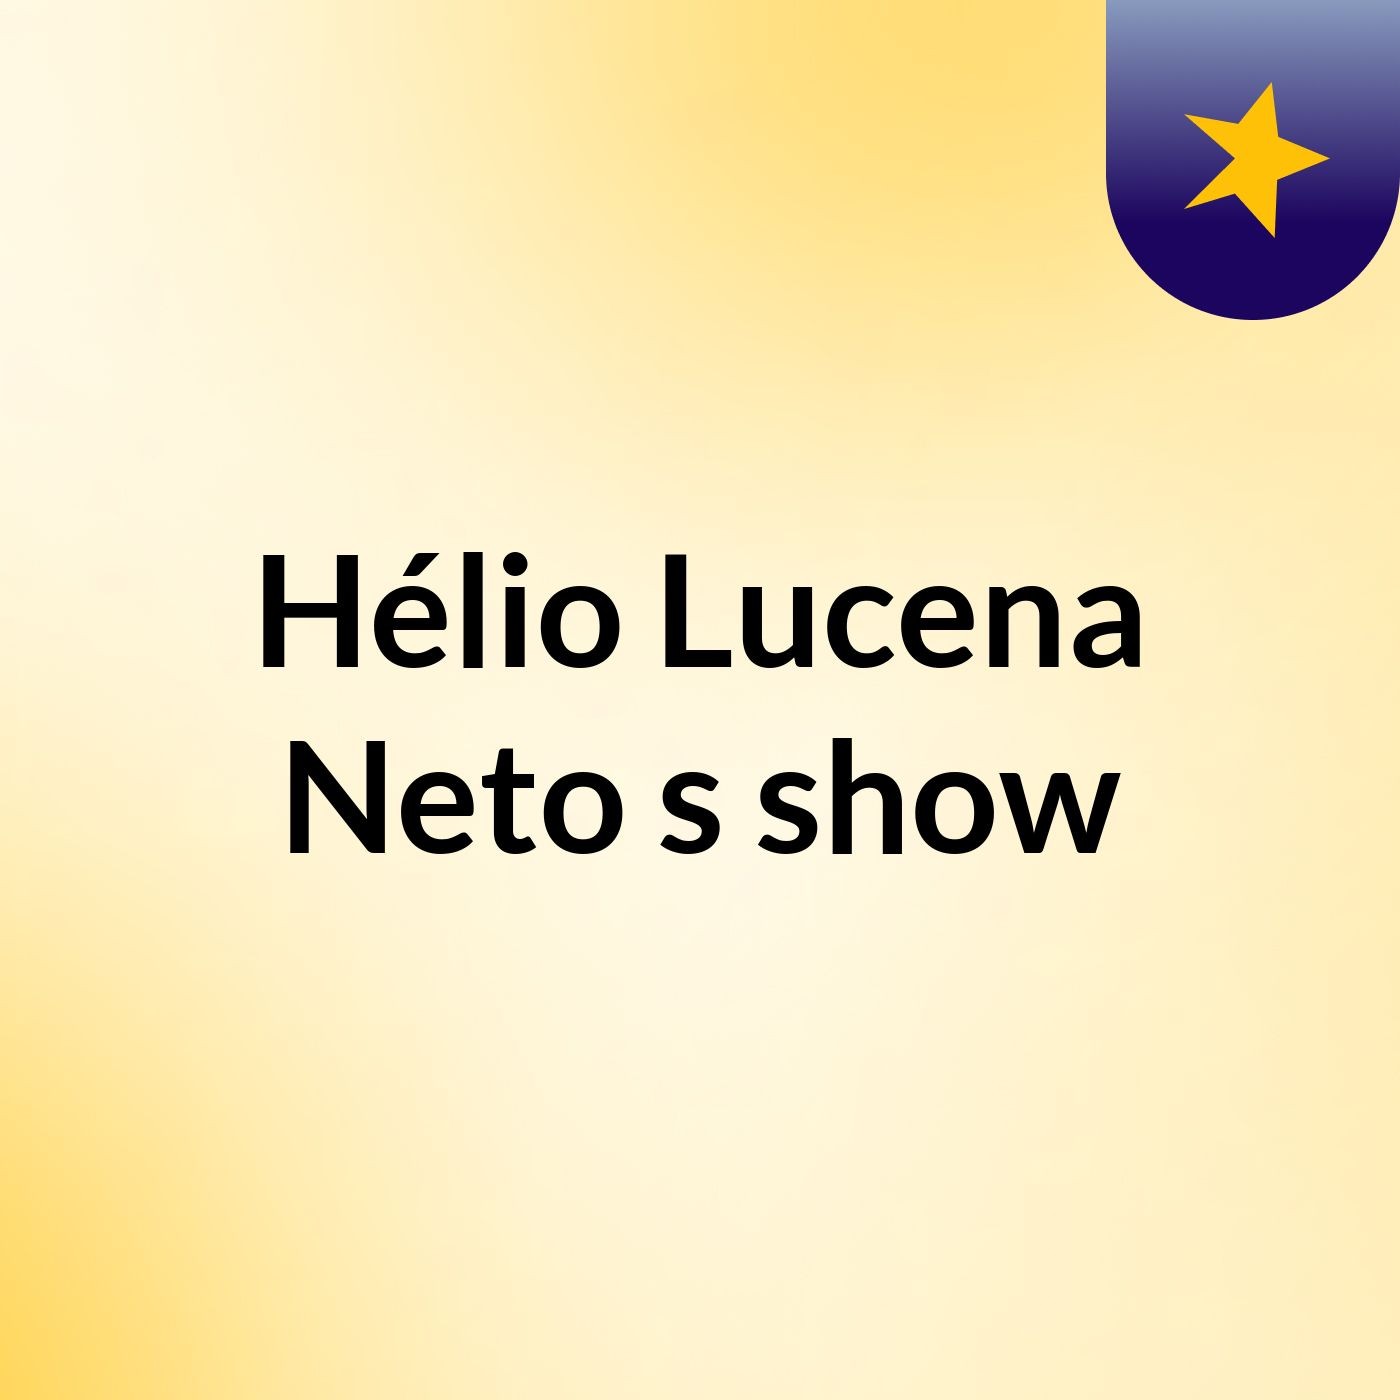 Hélio Lucena Neto's show